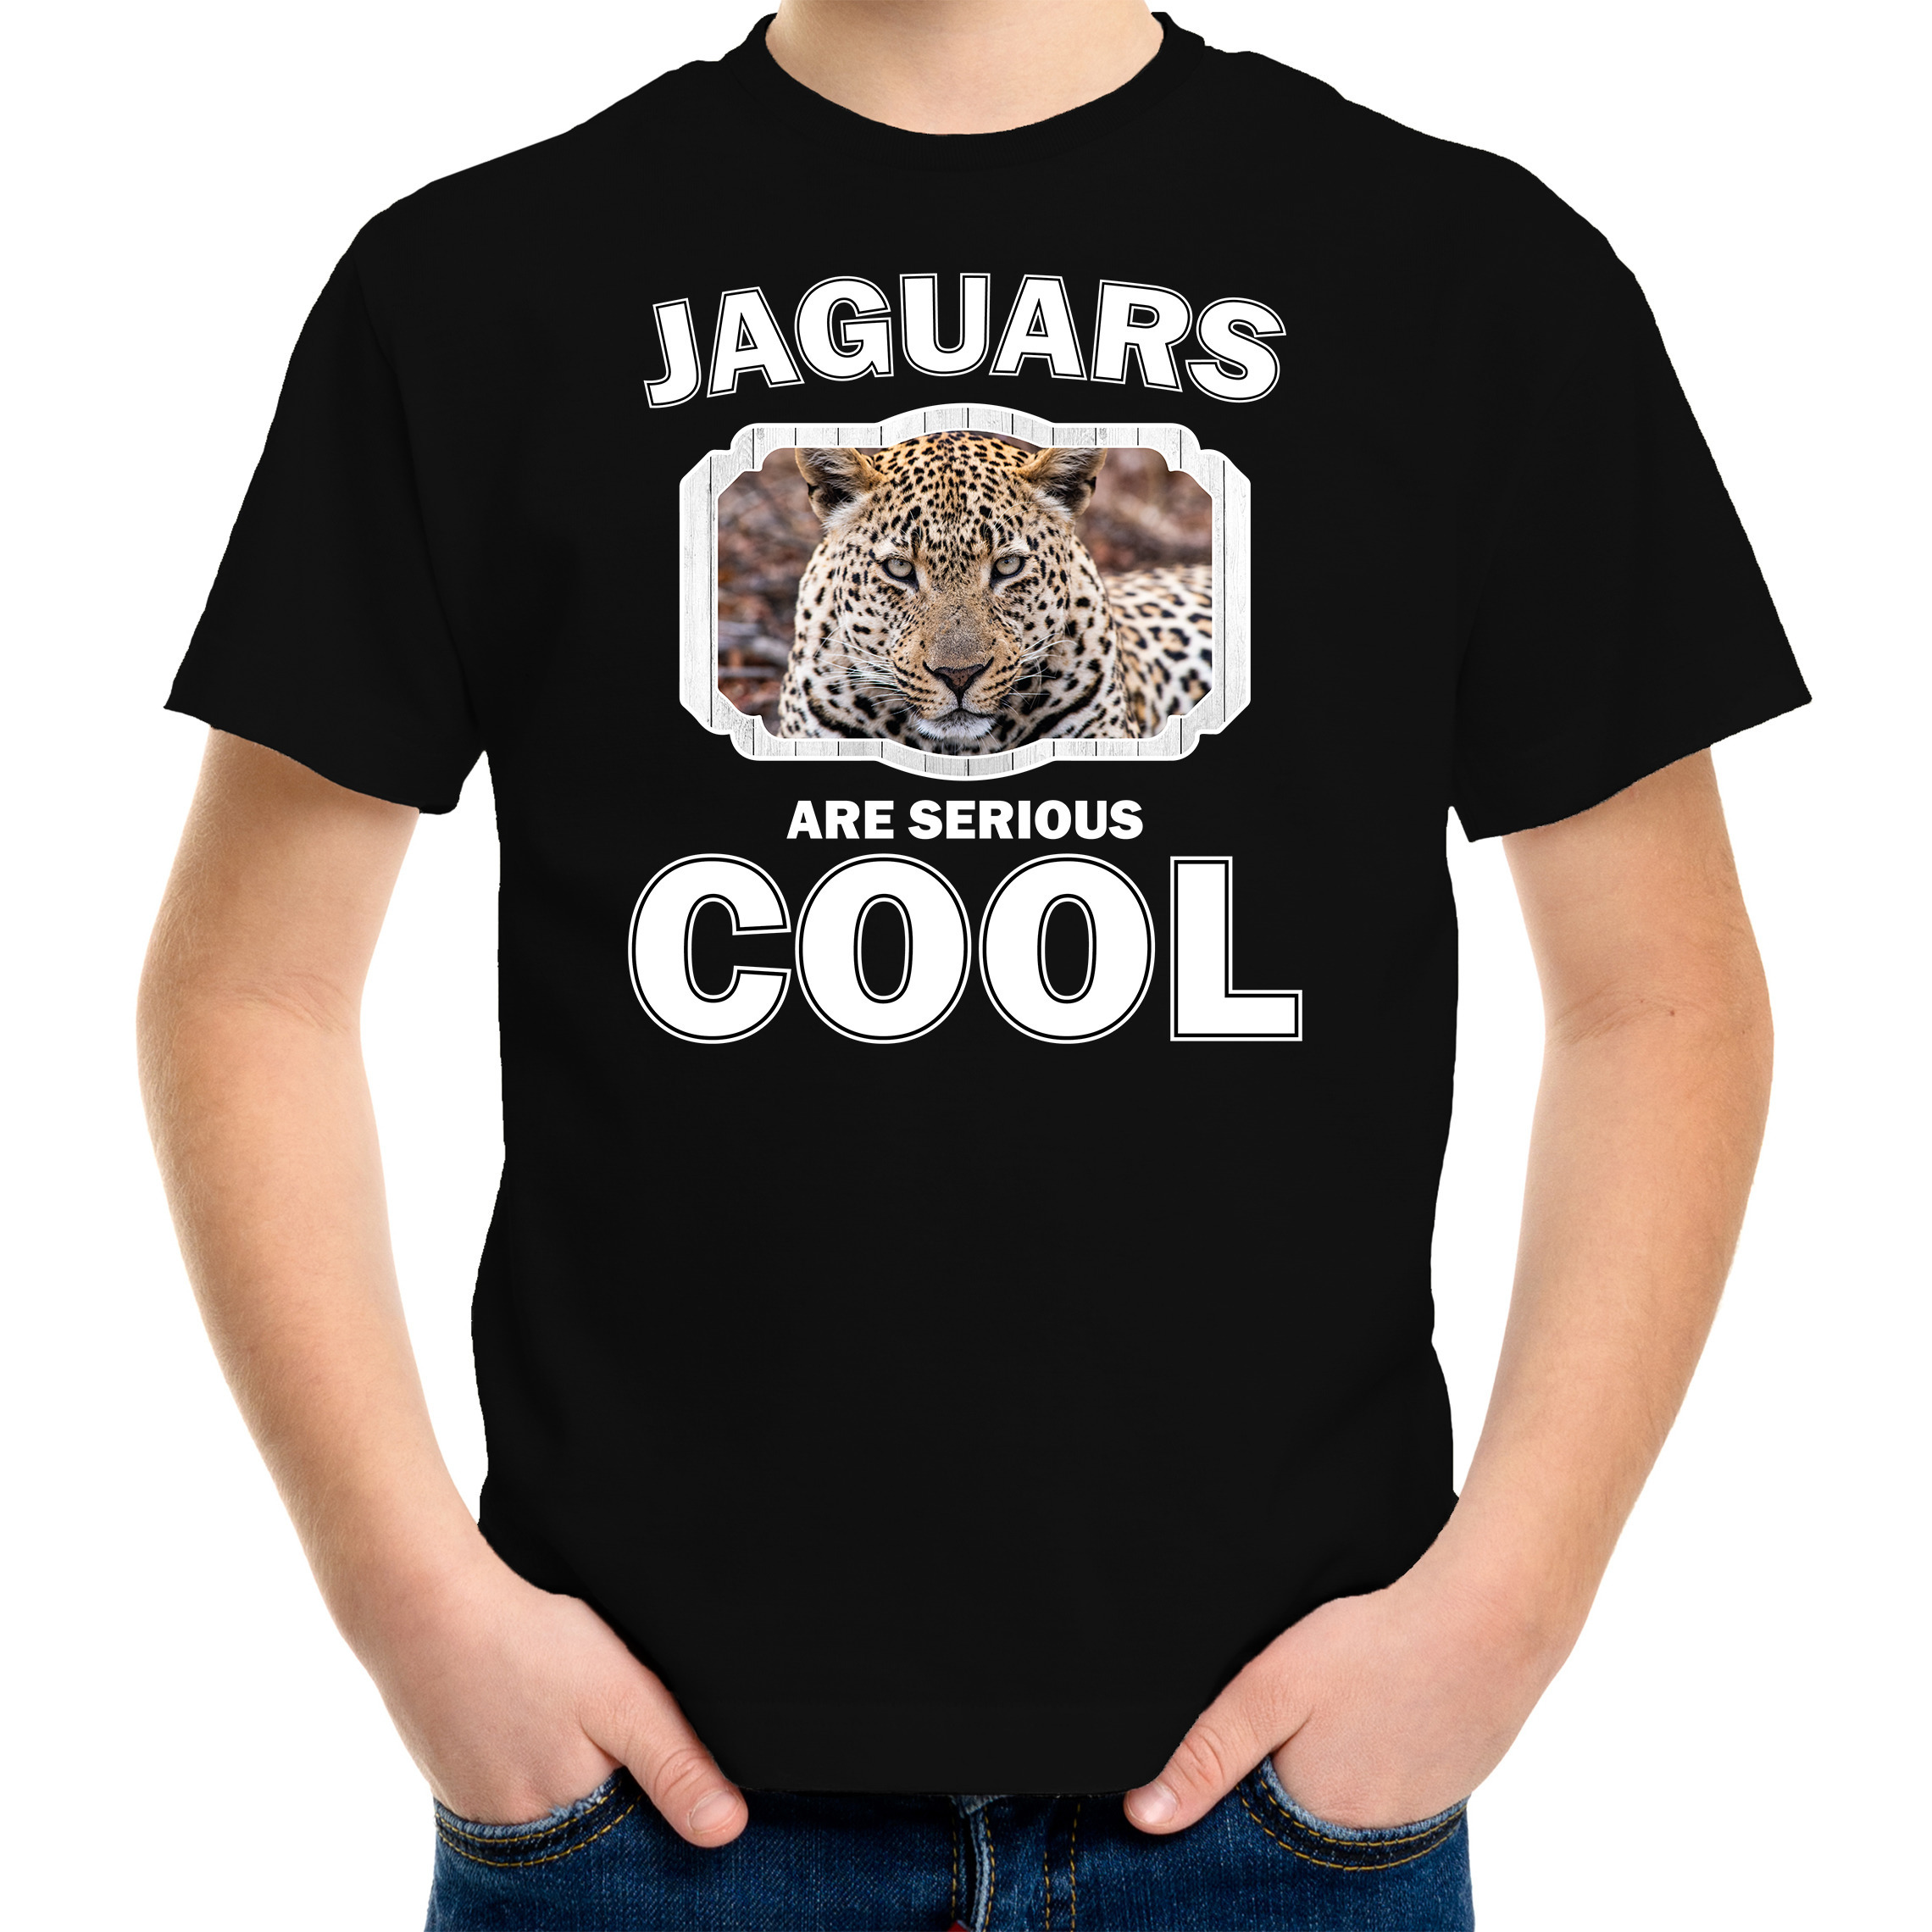 Dieren jaguar t-shirt zwart kinderen - jaguars are cool shirt jongens en meisjes